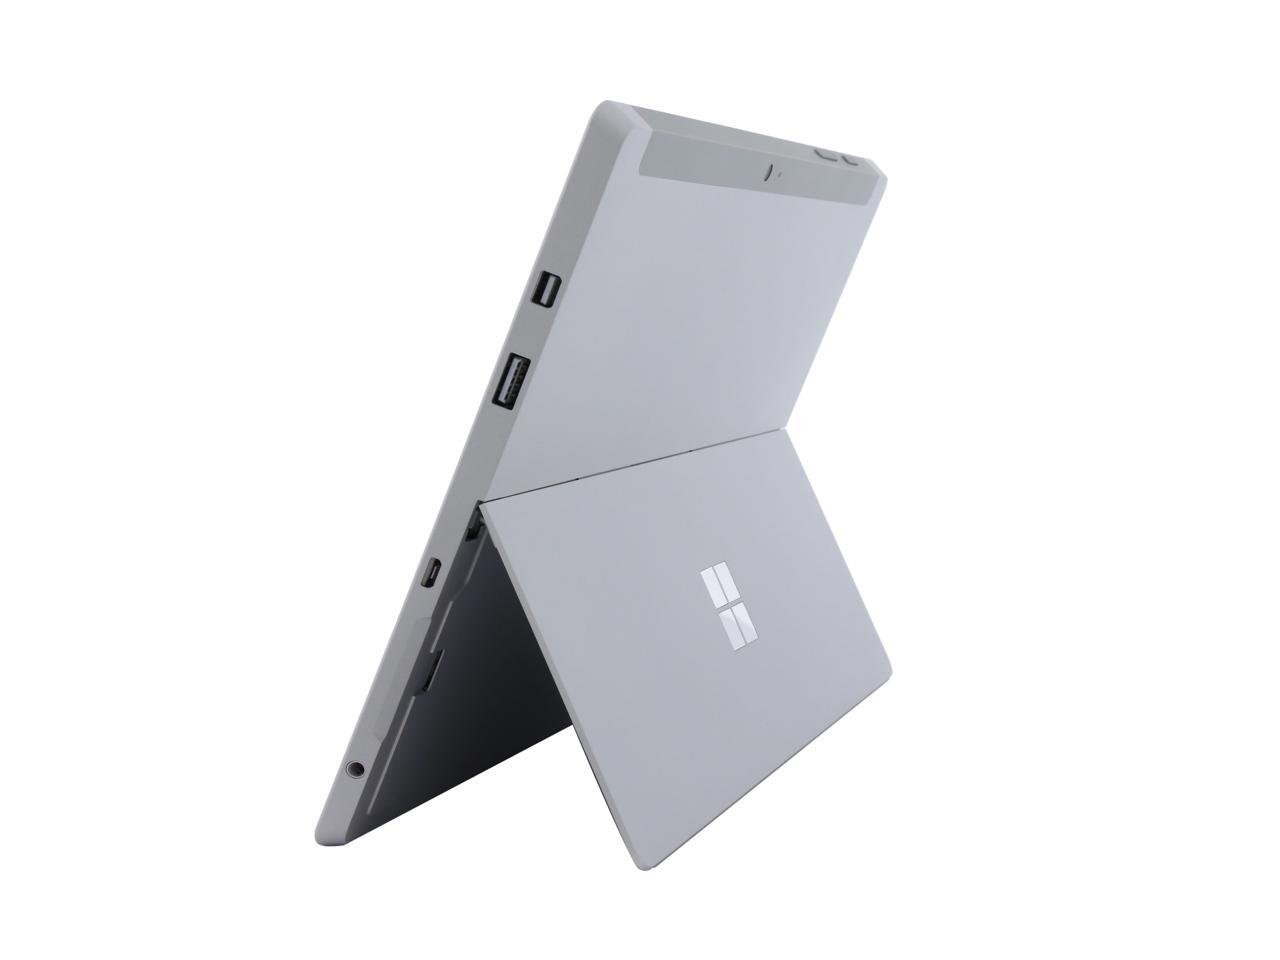 Microsoft Surface 3 LC5-00015 Intel Atom x7-Z8700 (1.60 GHz) 4 GB 